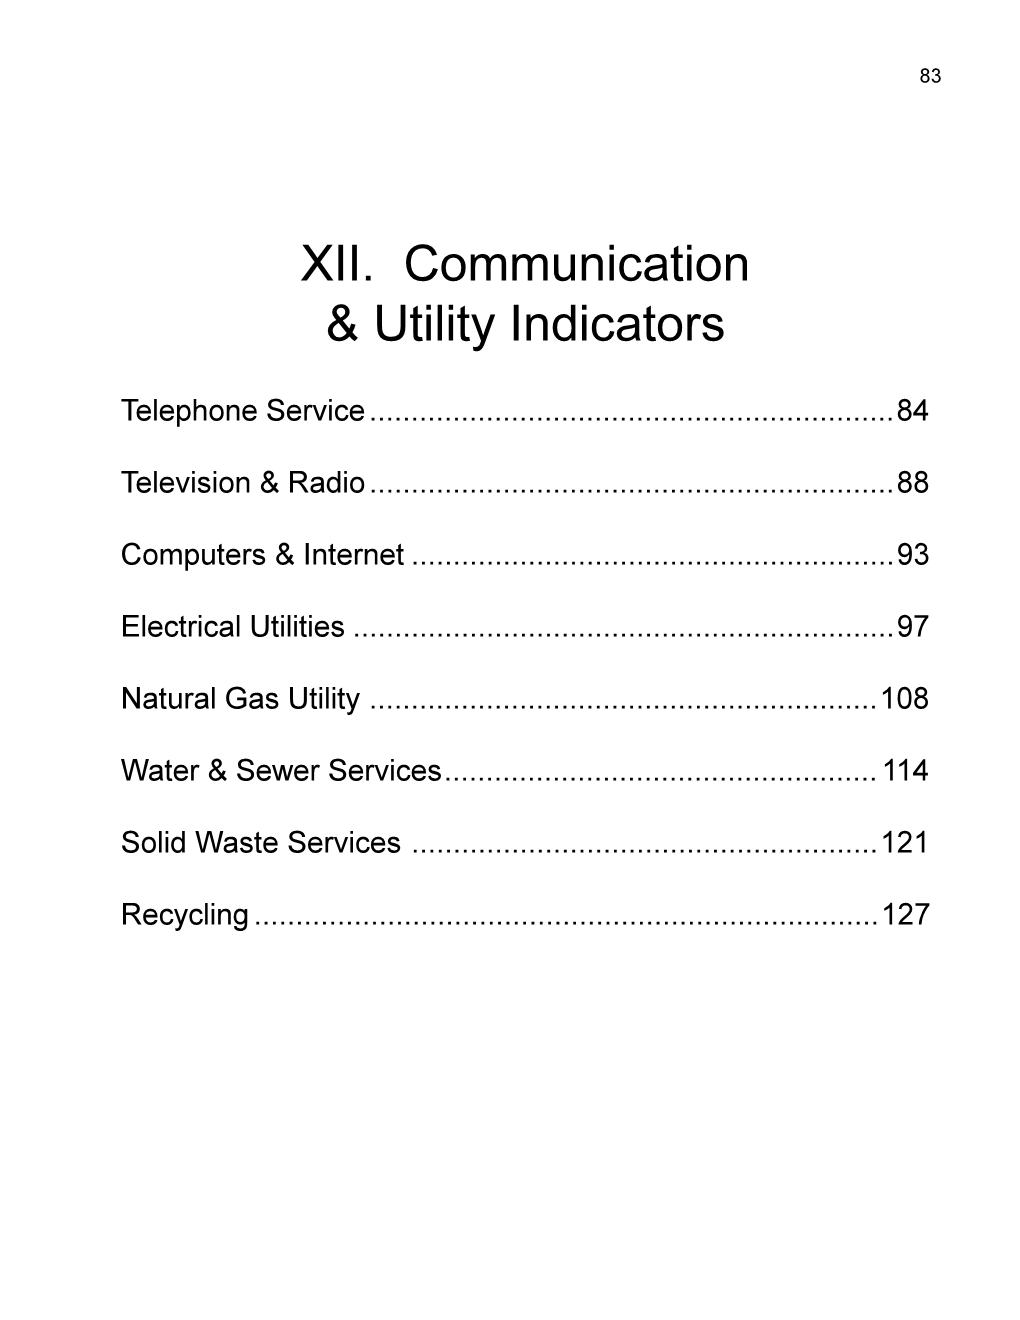 XII. Communication & Utility Indicators